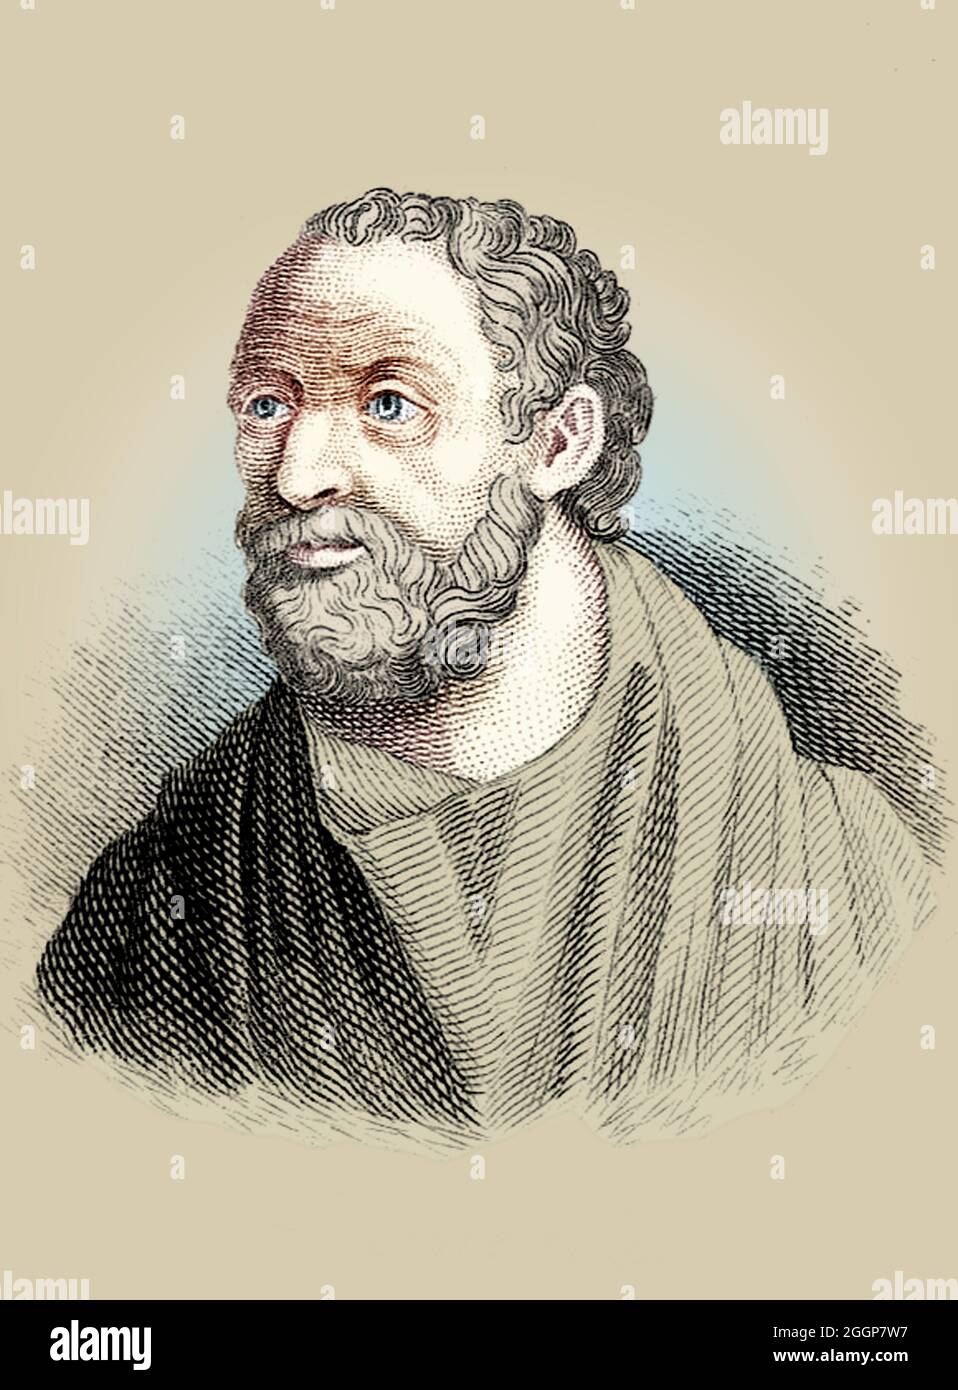 Illustration colorisée du philosophe grec Carneades (214/3 - 129/8 av. J.-C.). Banque D'Images